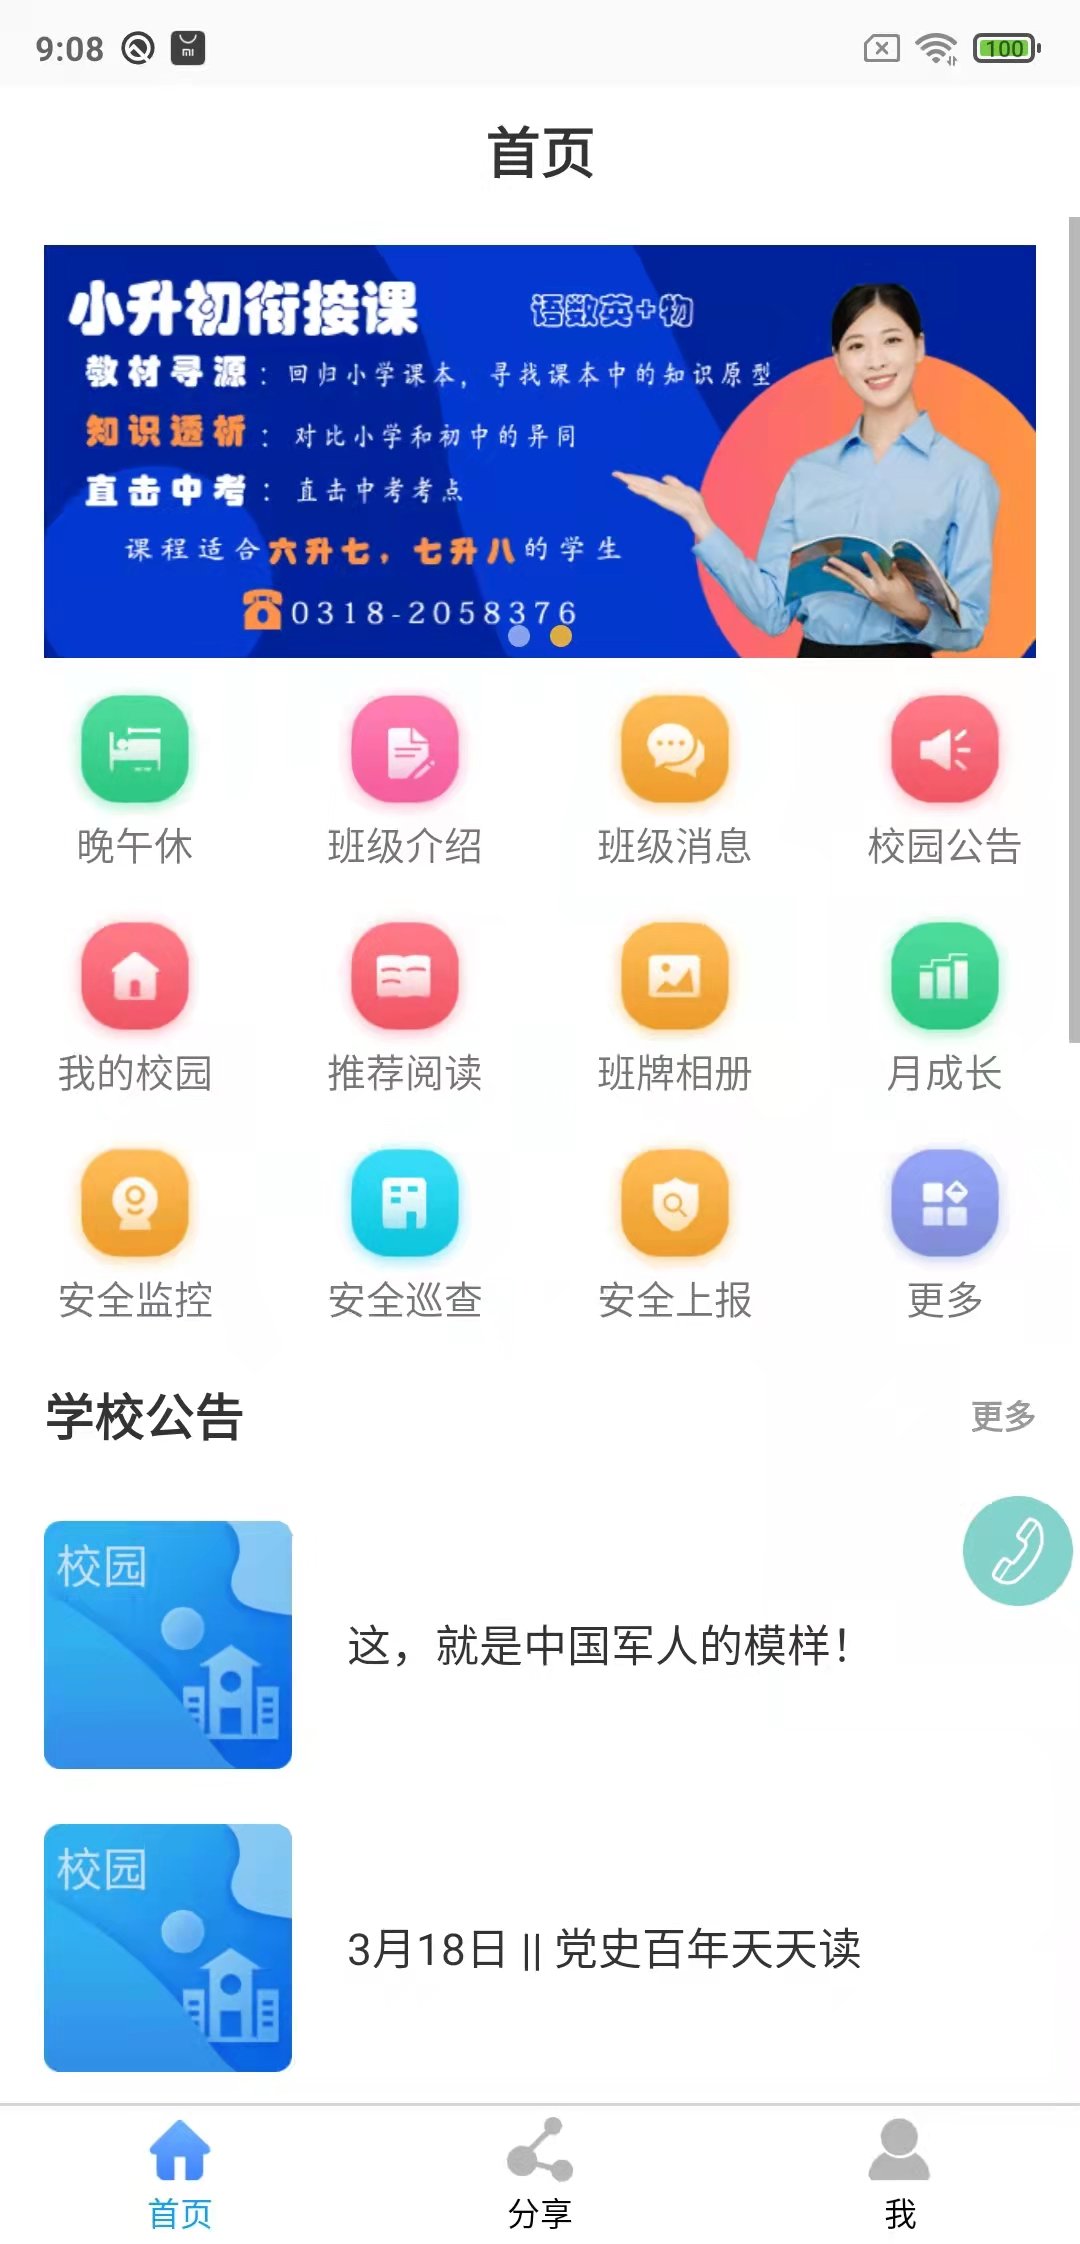 鑫考云校园手机版 v2.9.4 安卓官方版 1